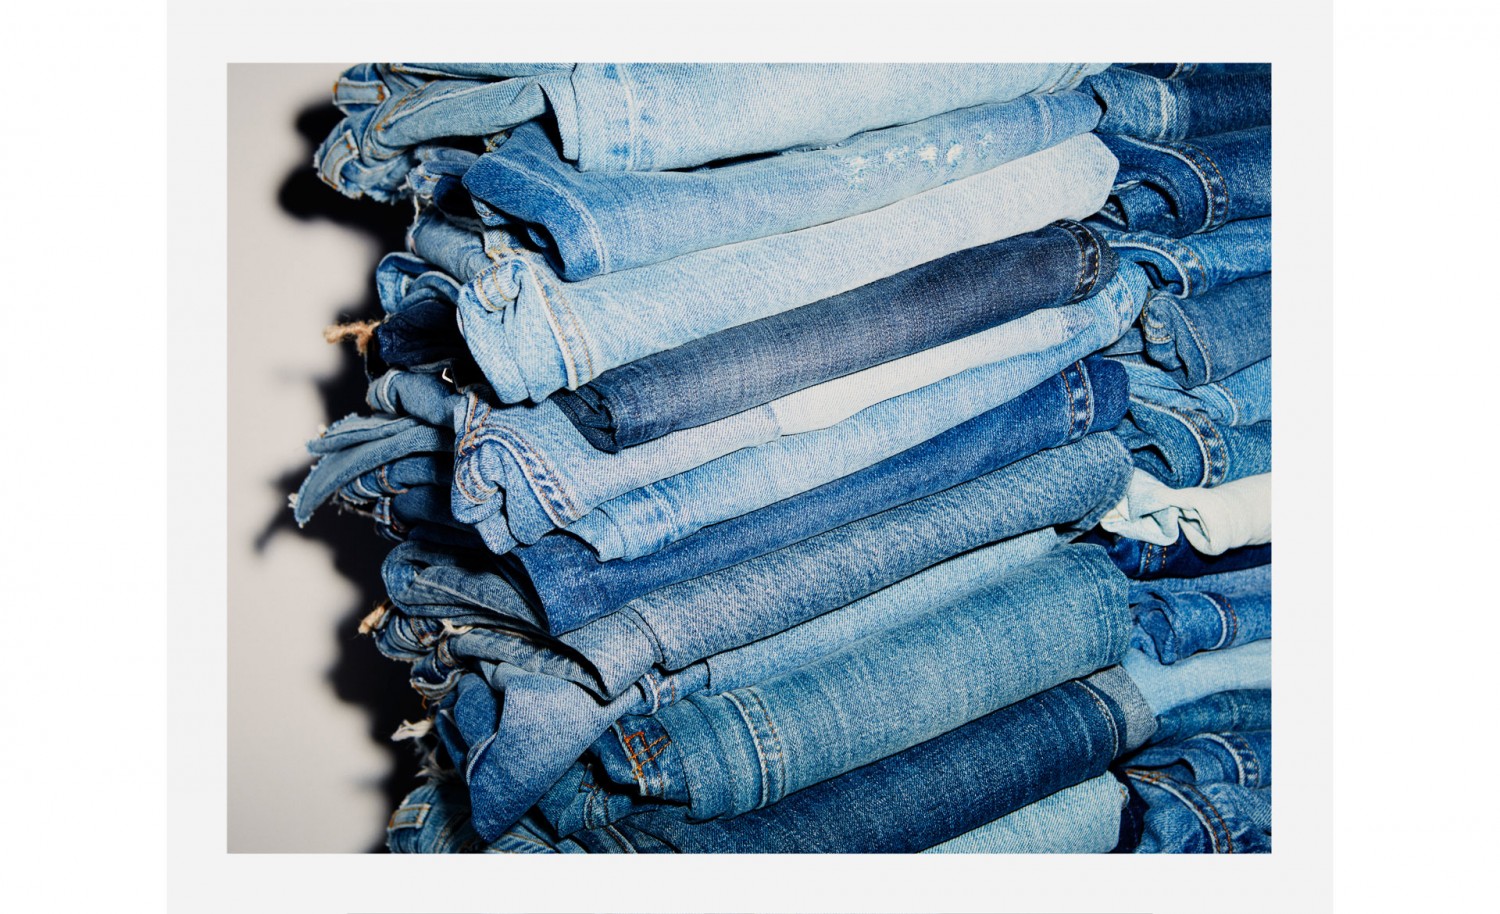 Jeg køber gerne mine jeans i Zara, da de både er billige og i en go' kvalitet. PRIS: Cirka 200-300 kroner, afhængig af hvilke du køber selvfølgelig